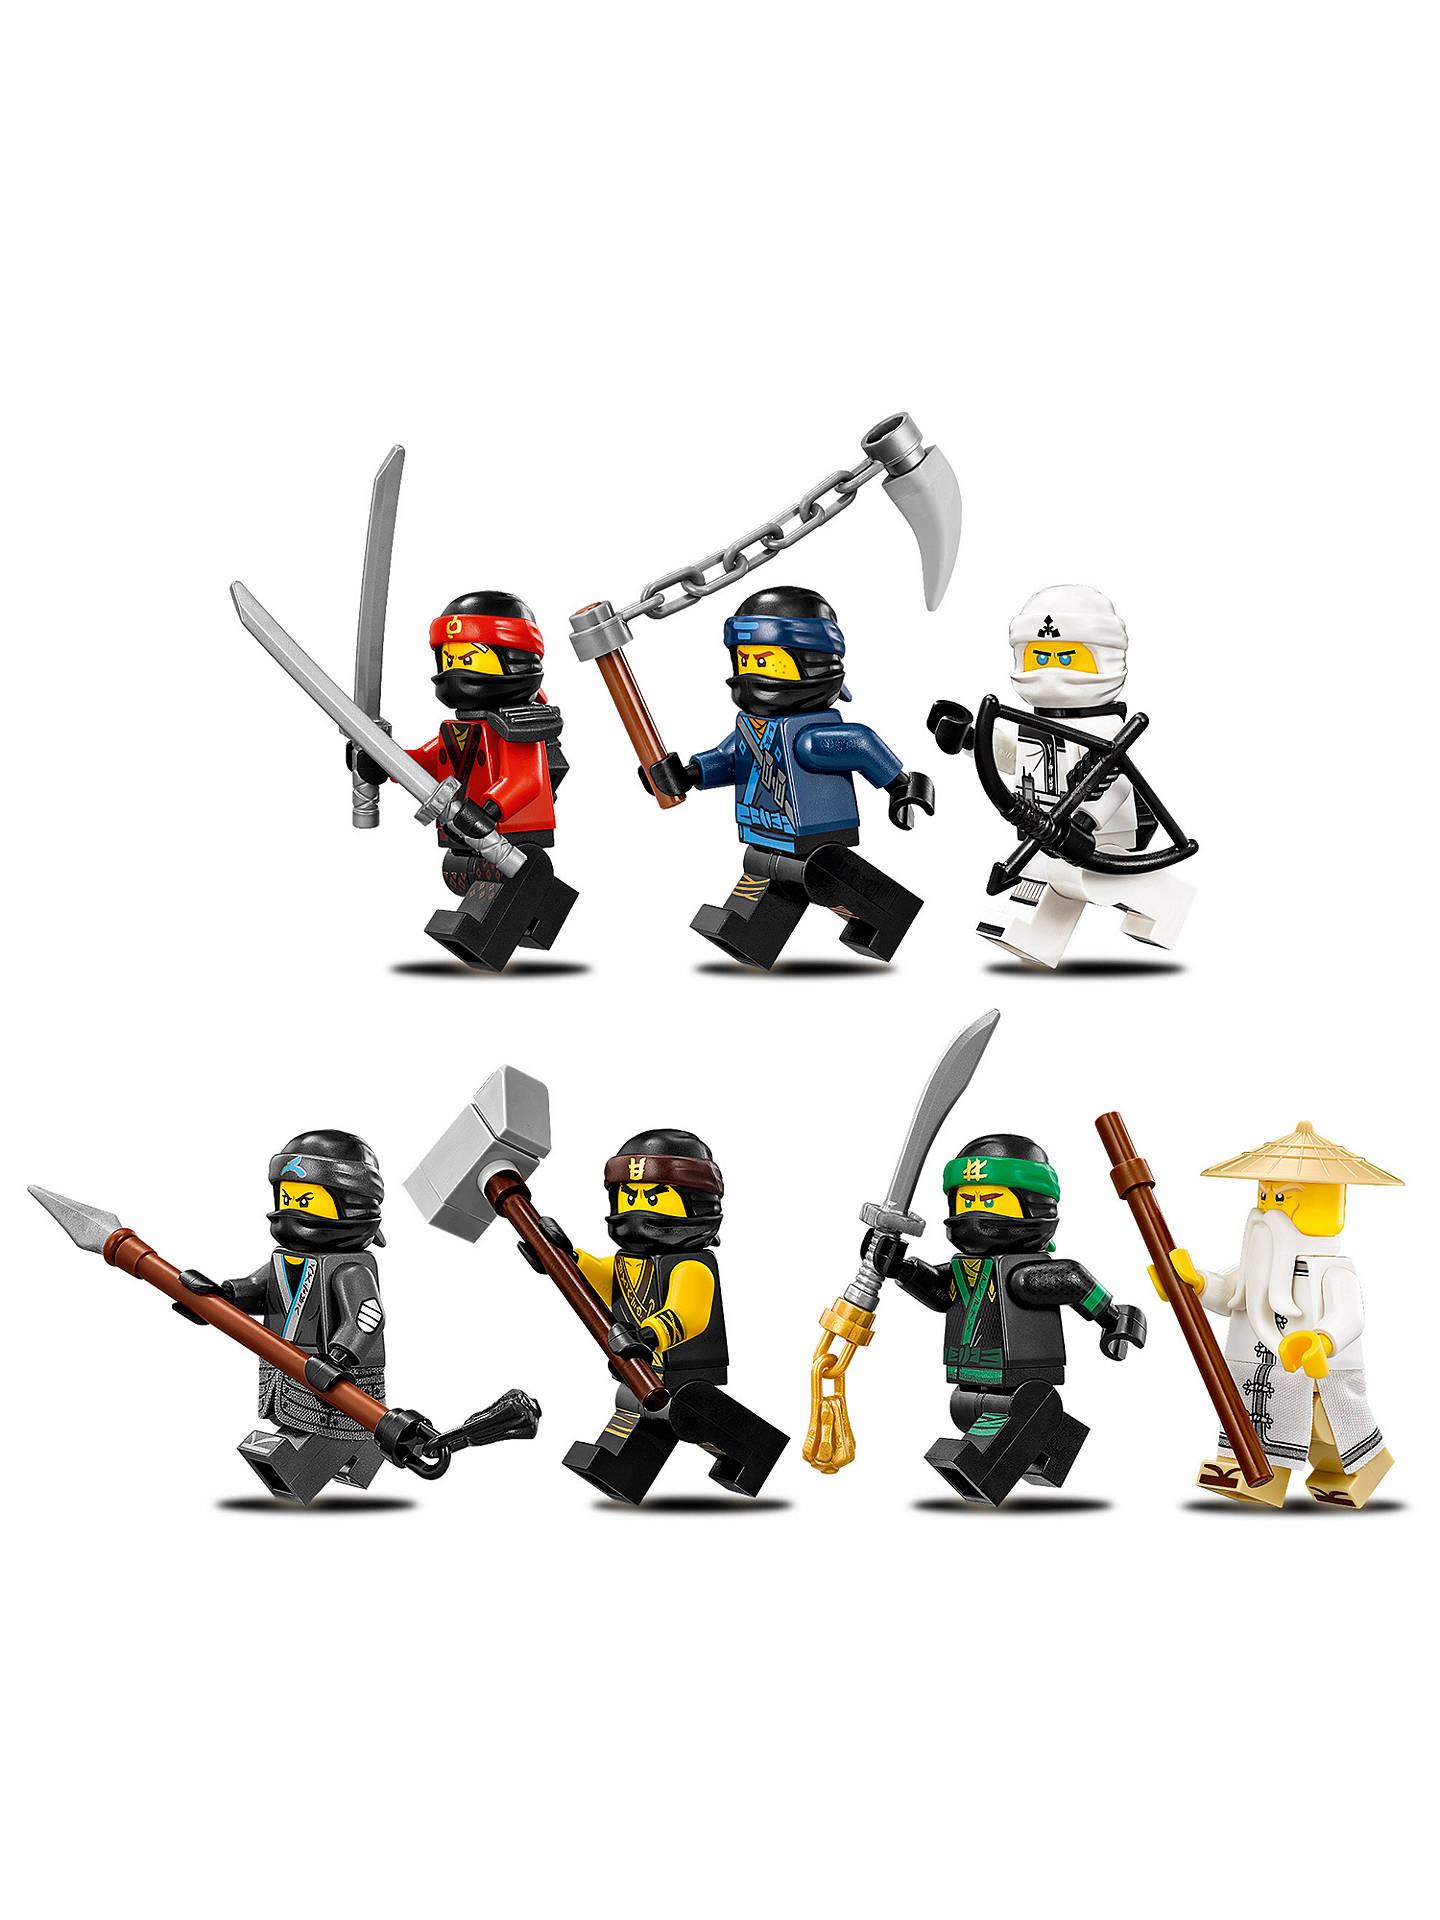 LEGO Ninjago 70618 Destiny's Bounty at John Lewis & Partners